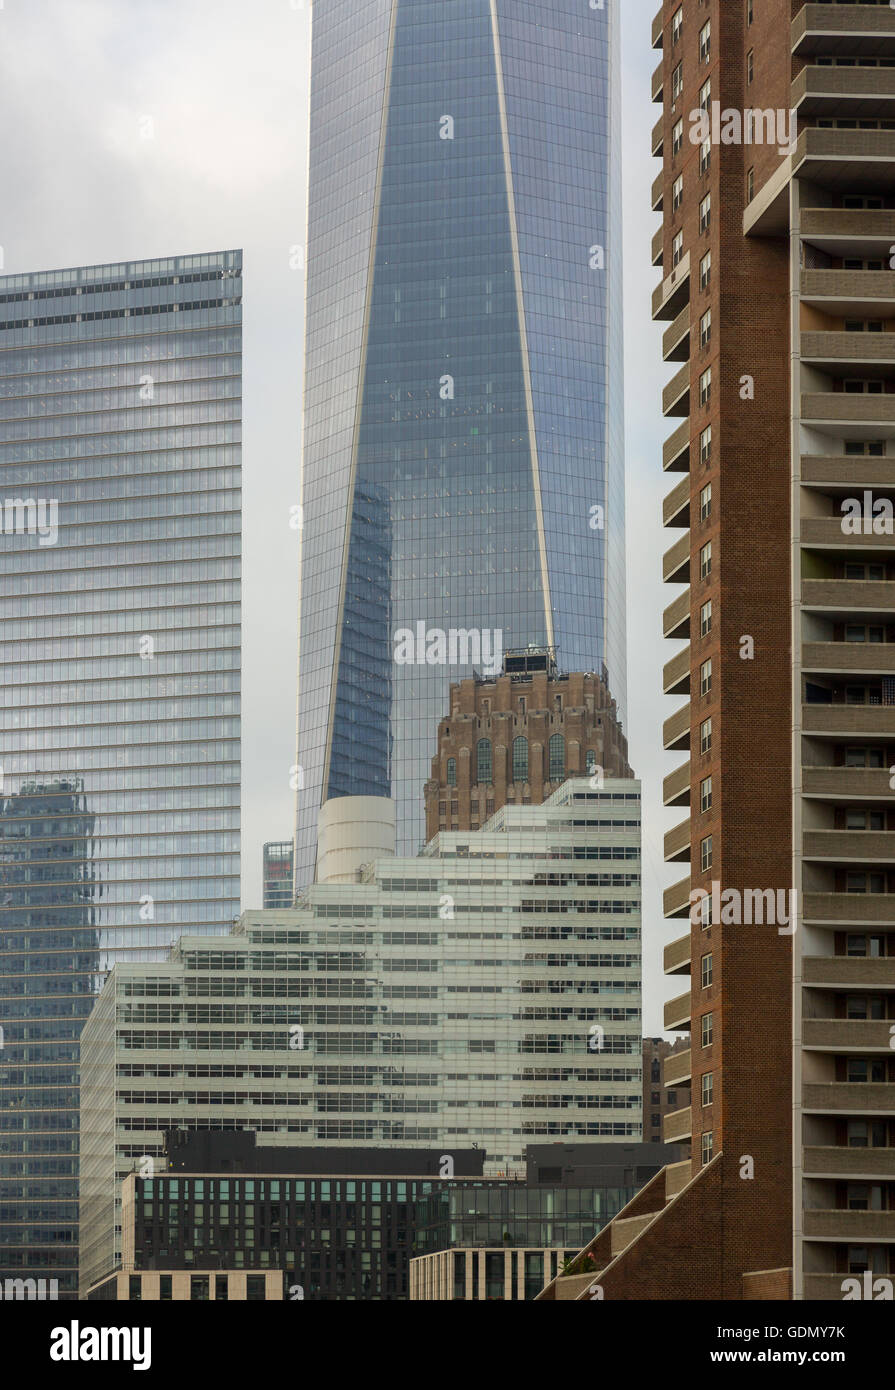 detailliertes Bild von der NYC Stadtbild mit einer Portion der Freedom Tower und andere hohe Hochhäuser in Manhattan Stockfoto